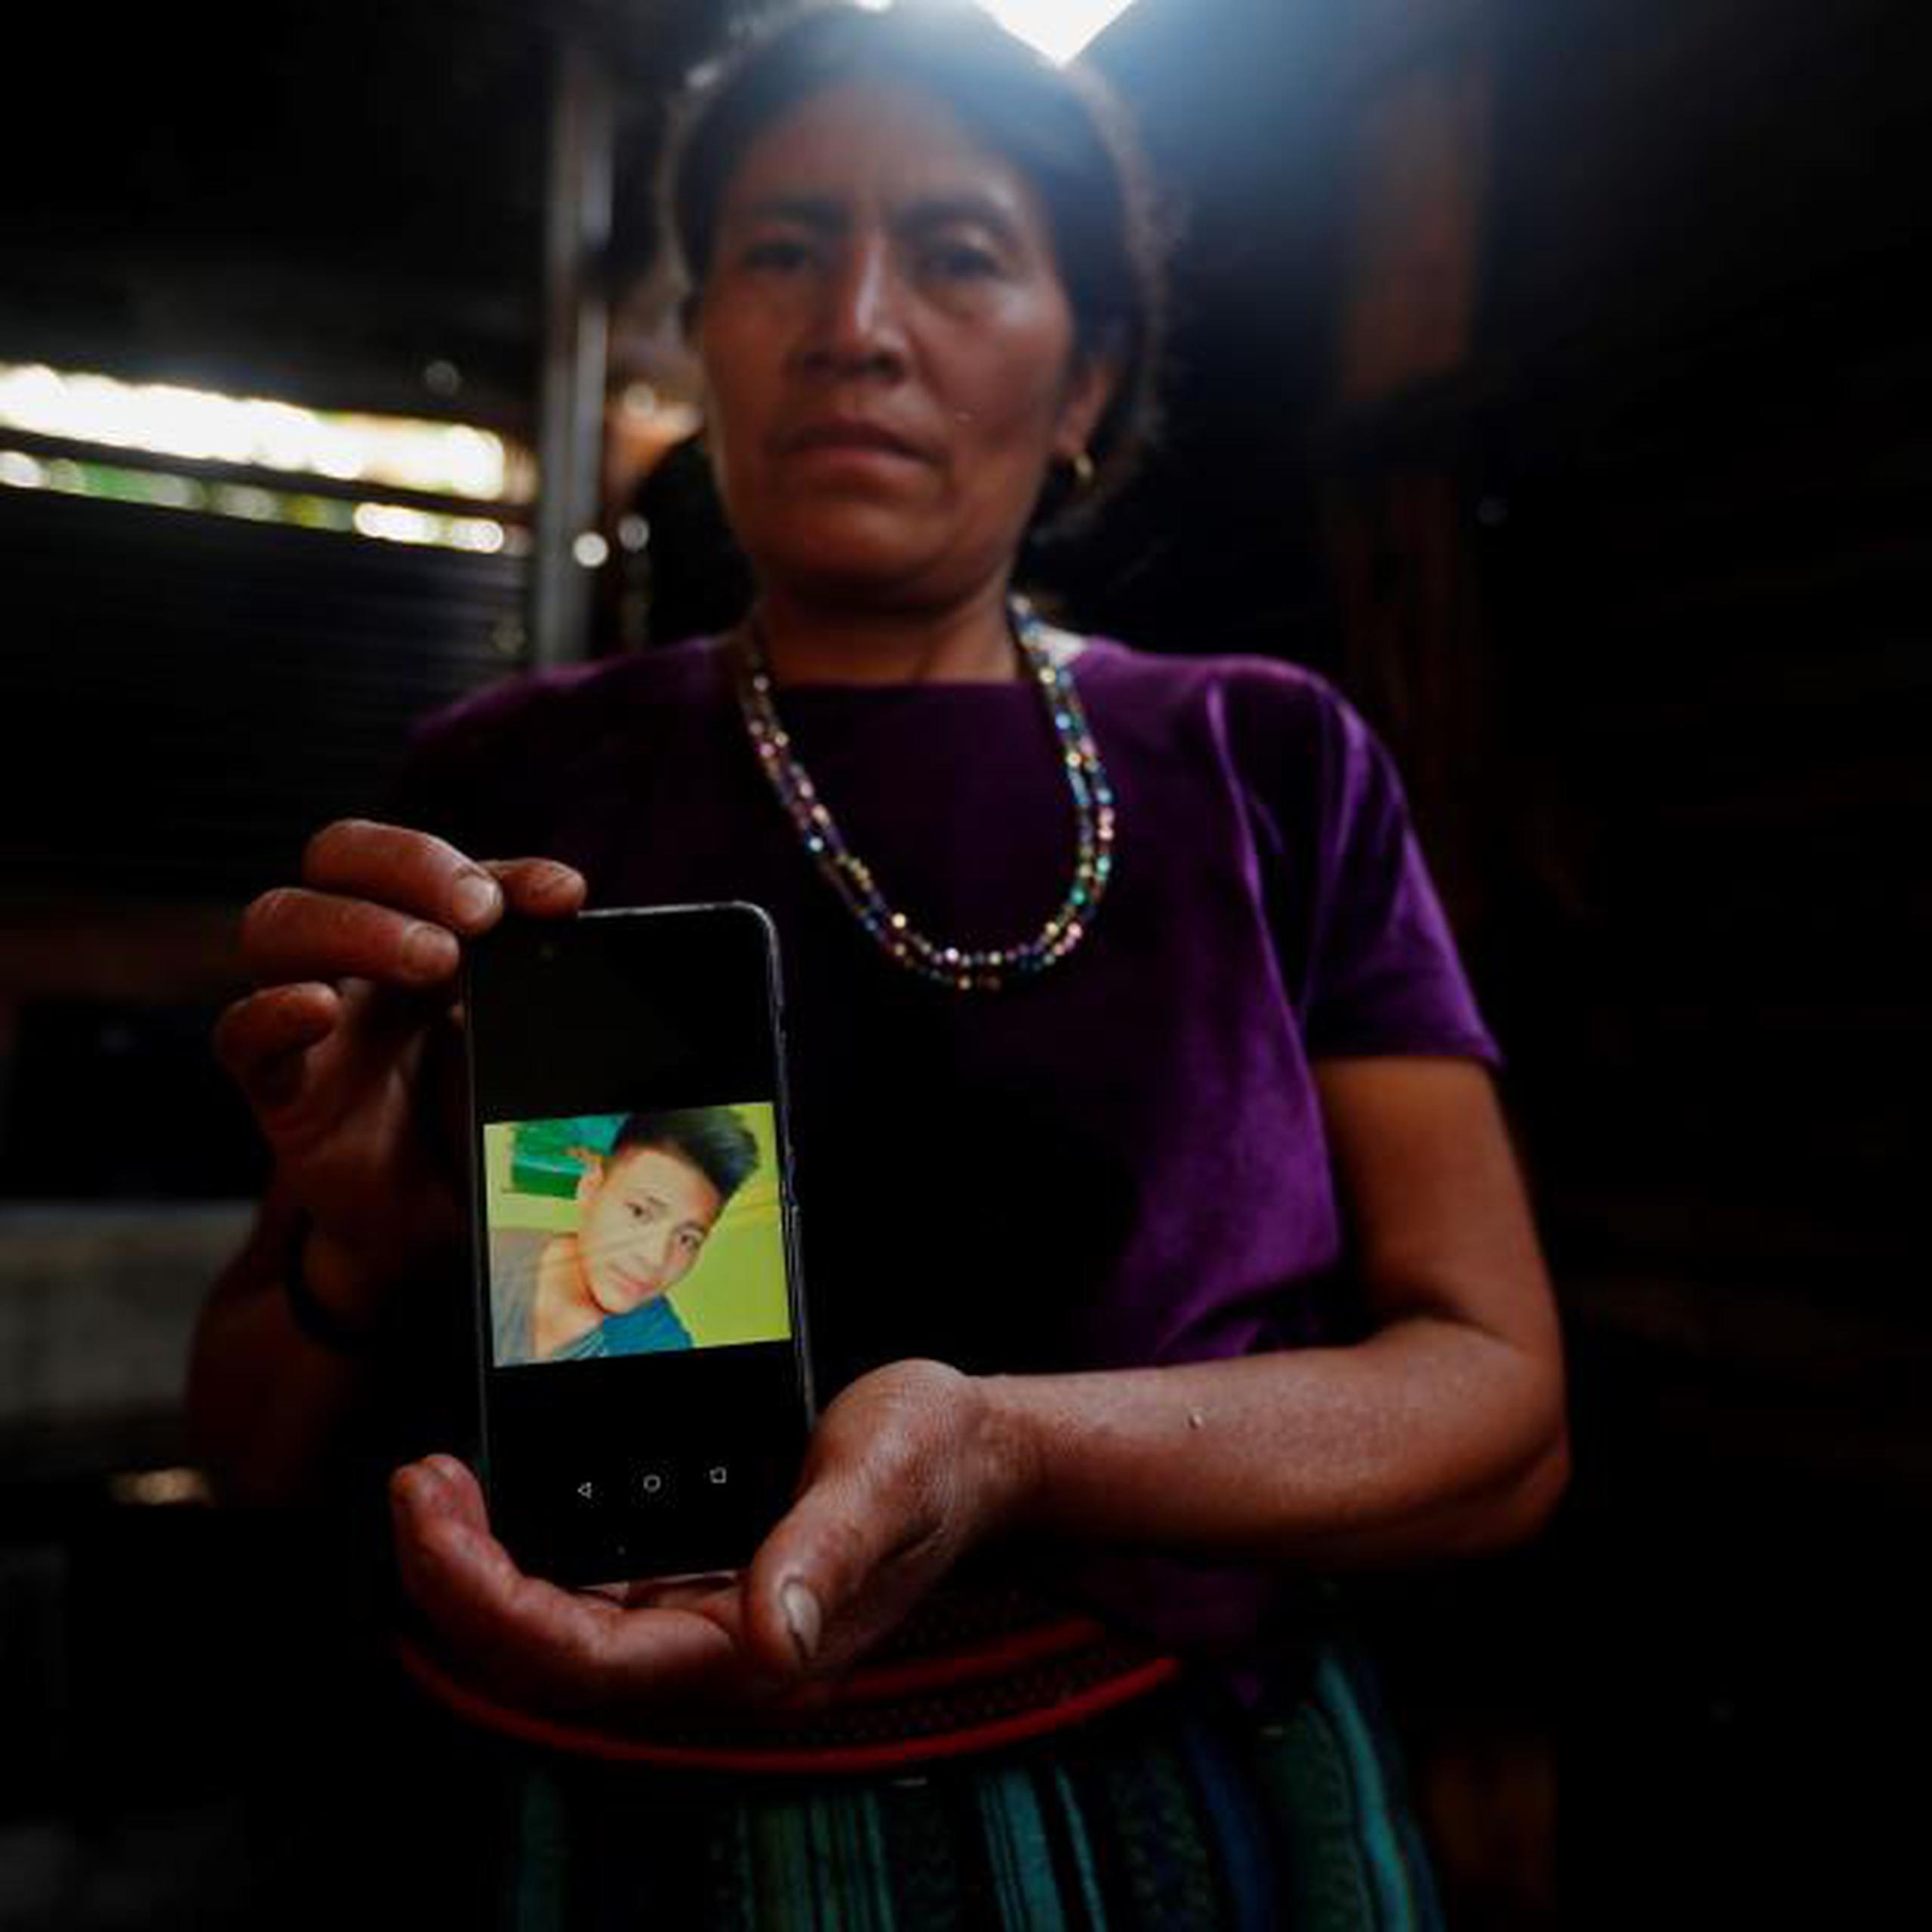 Este es el quinto menor de edad, todos ellos guatemaltecos, que muere desde diciembre tras ser detenido por la Patrulla Fronteriza y el segundo de mayo. (EFE)